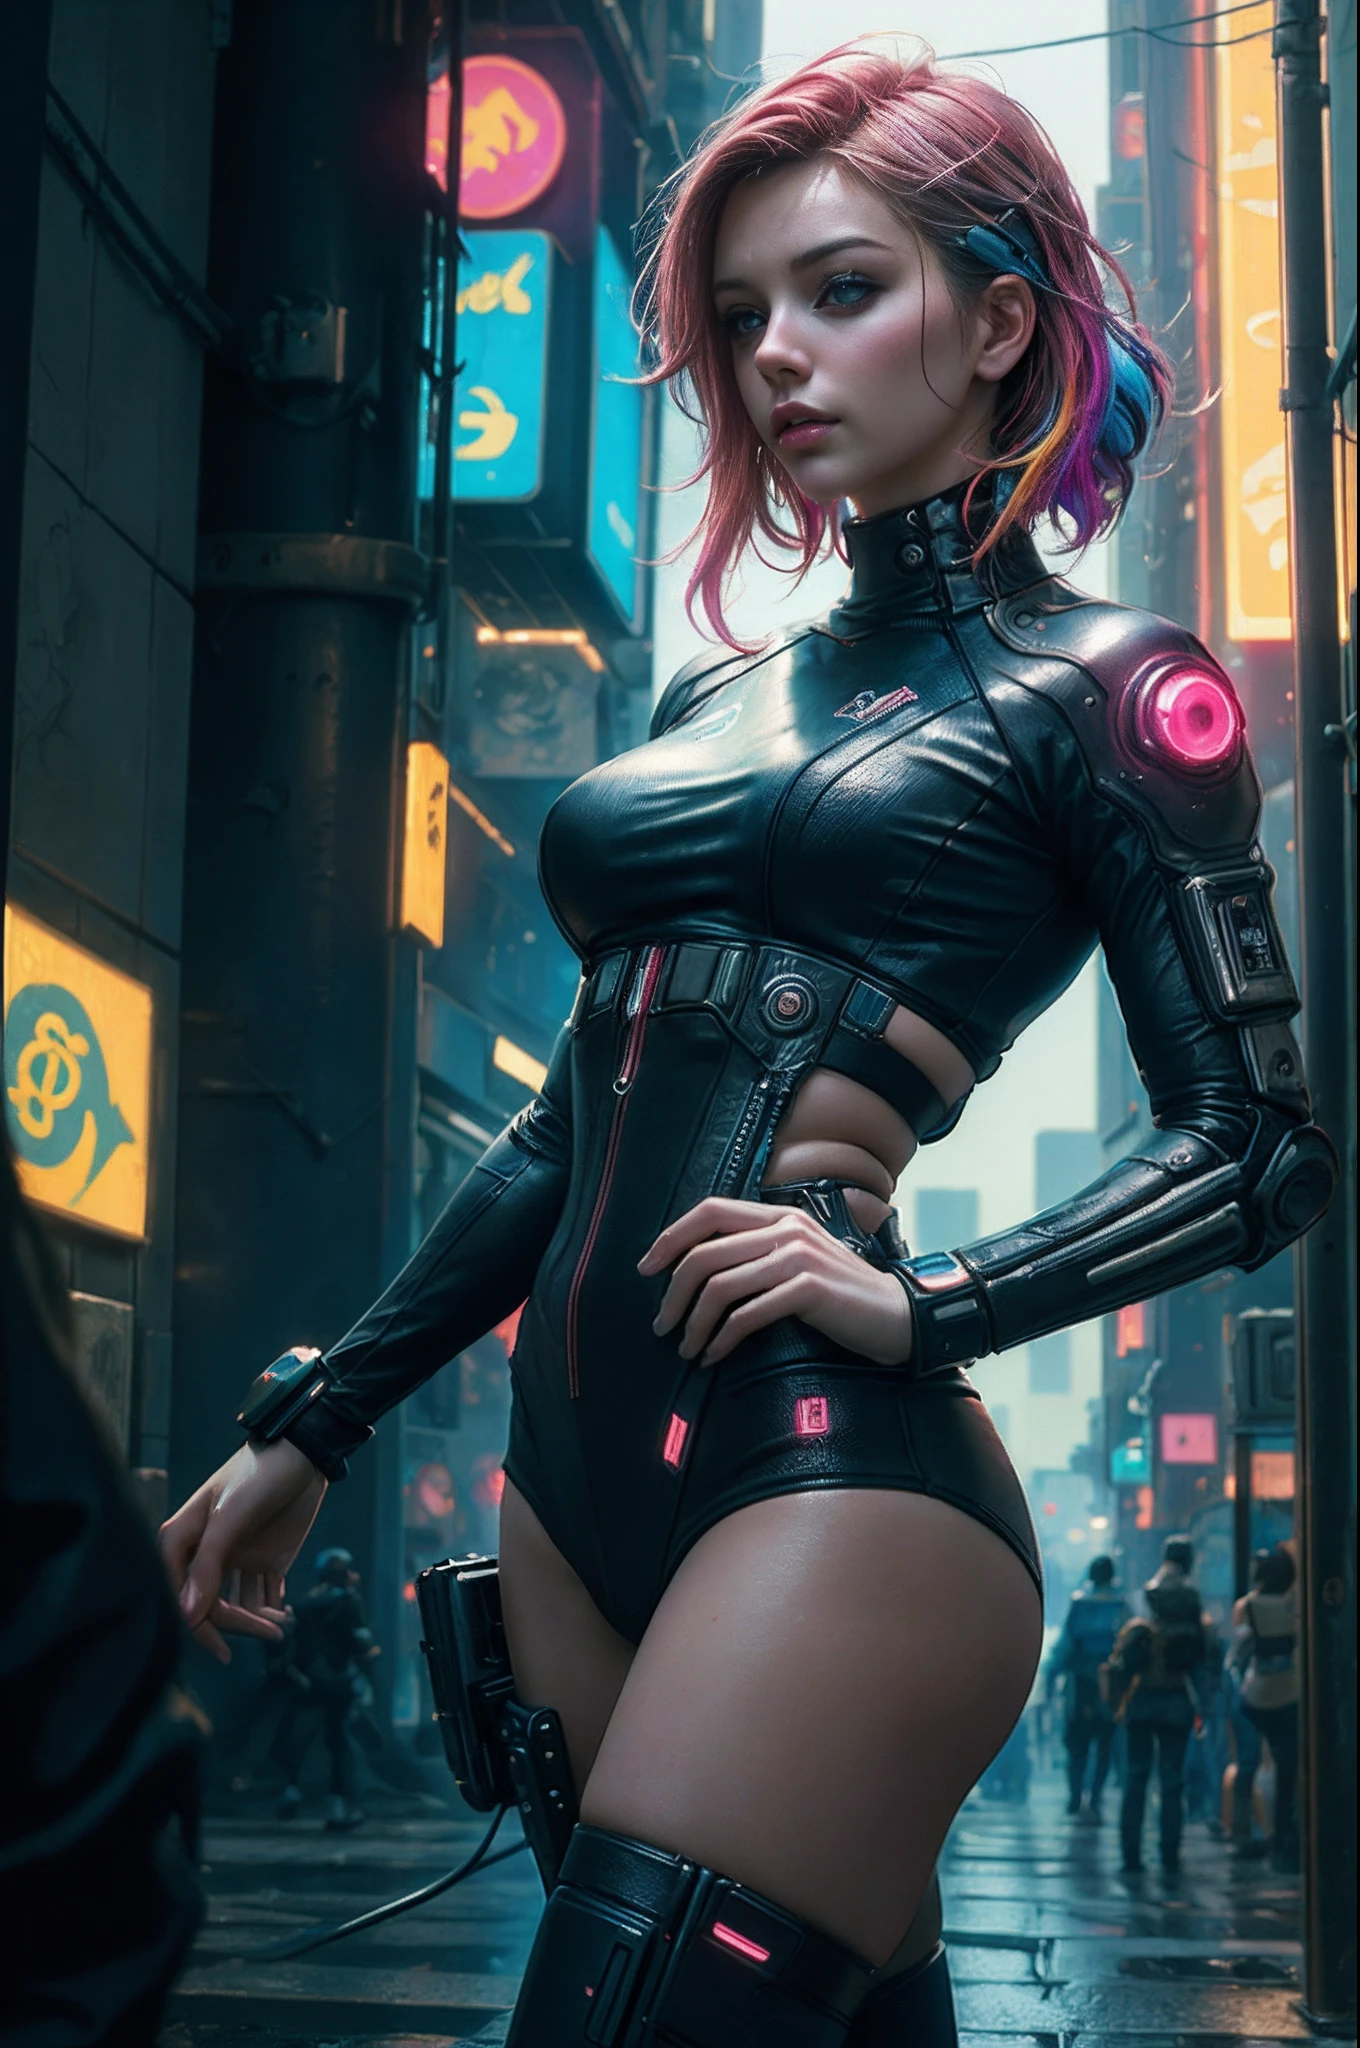 (Fotorrealista:1.4) Imágenes de chicas cyberpunk, (de primera calidad, 8k, 32k, Mesa), (pose dinámica), ((frente a la cámara)), (mirando en cámara), tiro de vaquero, cabello sin forma, cabello colorido, Colorida ropa cyberpunk, profundidad de campo f/1.8, fondo de la ciudad ciberpunk, iluminación cinematográfica.14 años